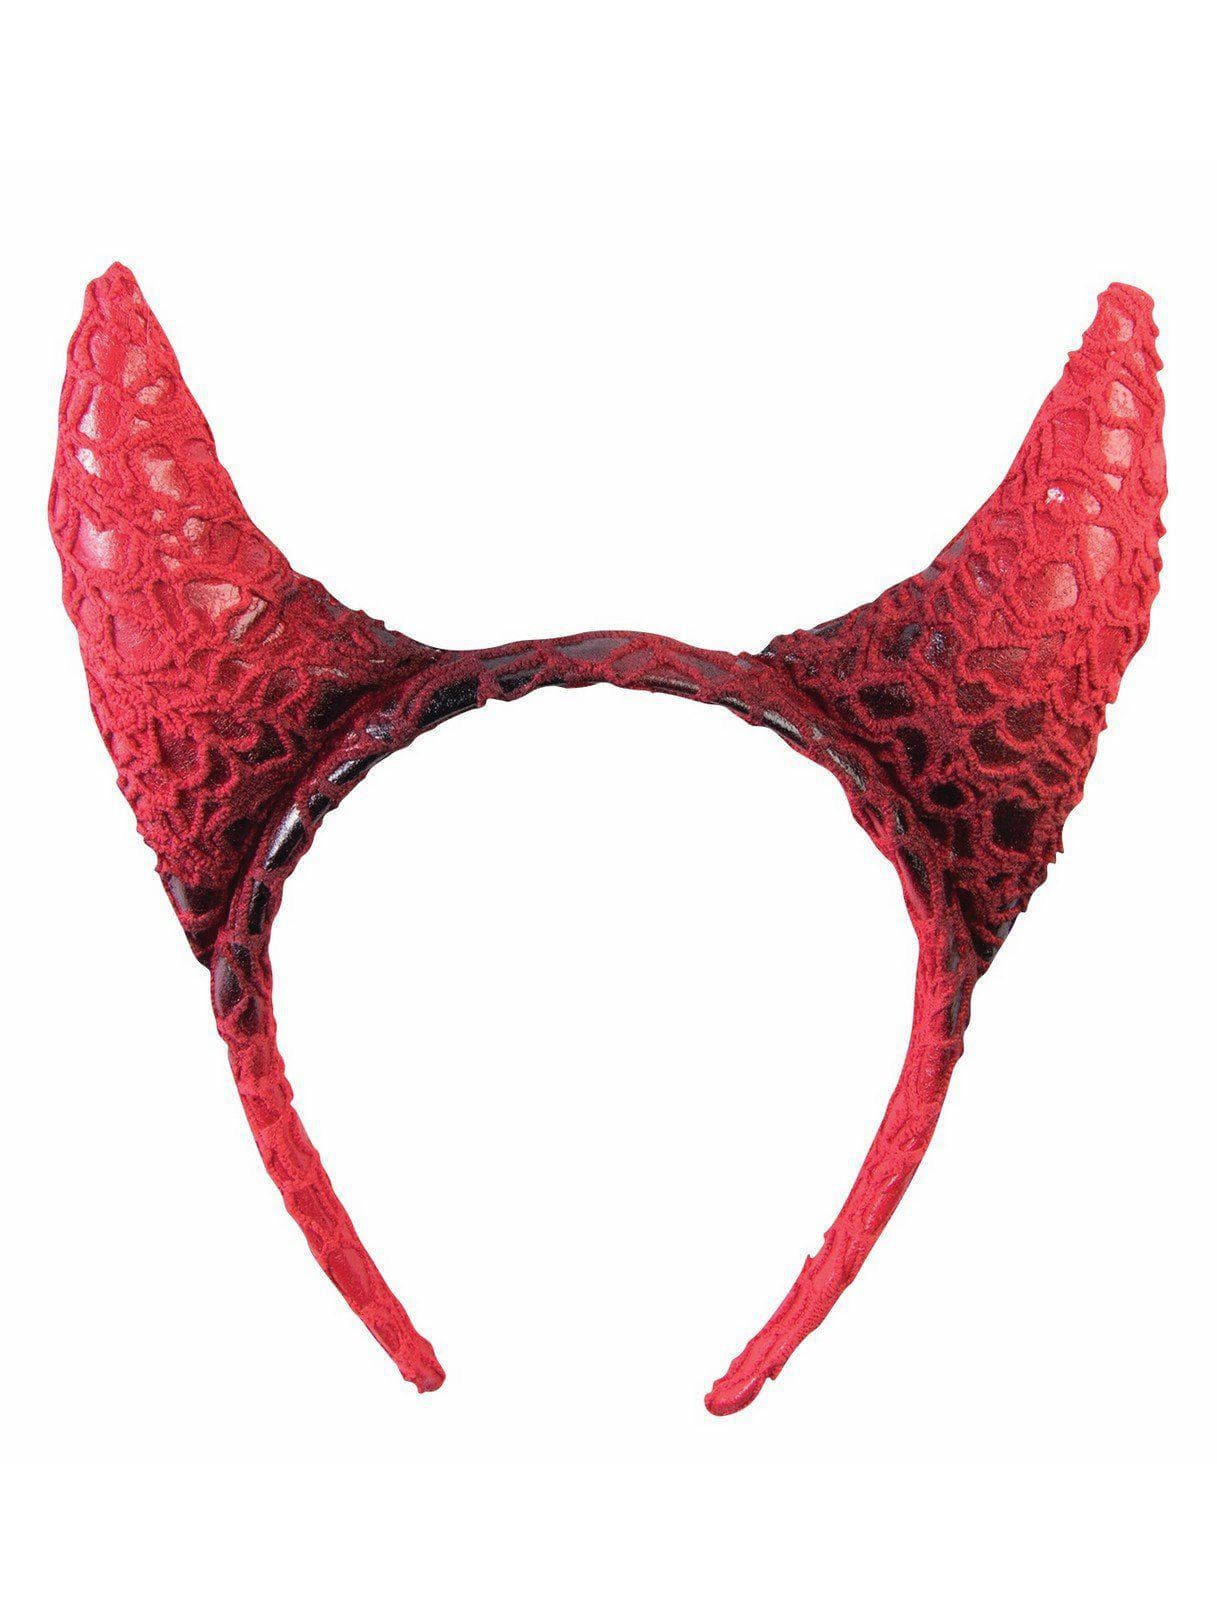 Adult Red Devil Horns Headband - costumes.com